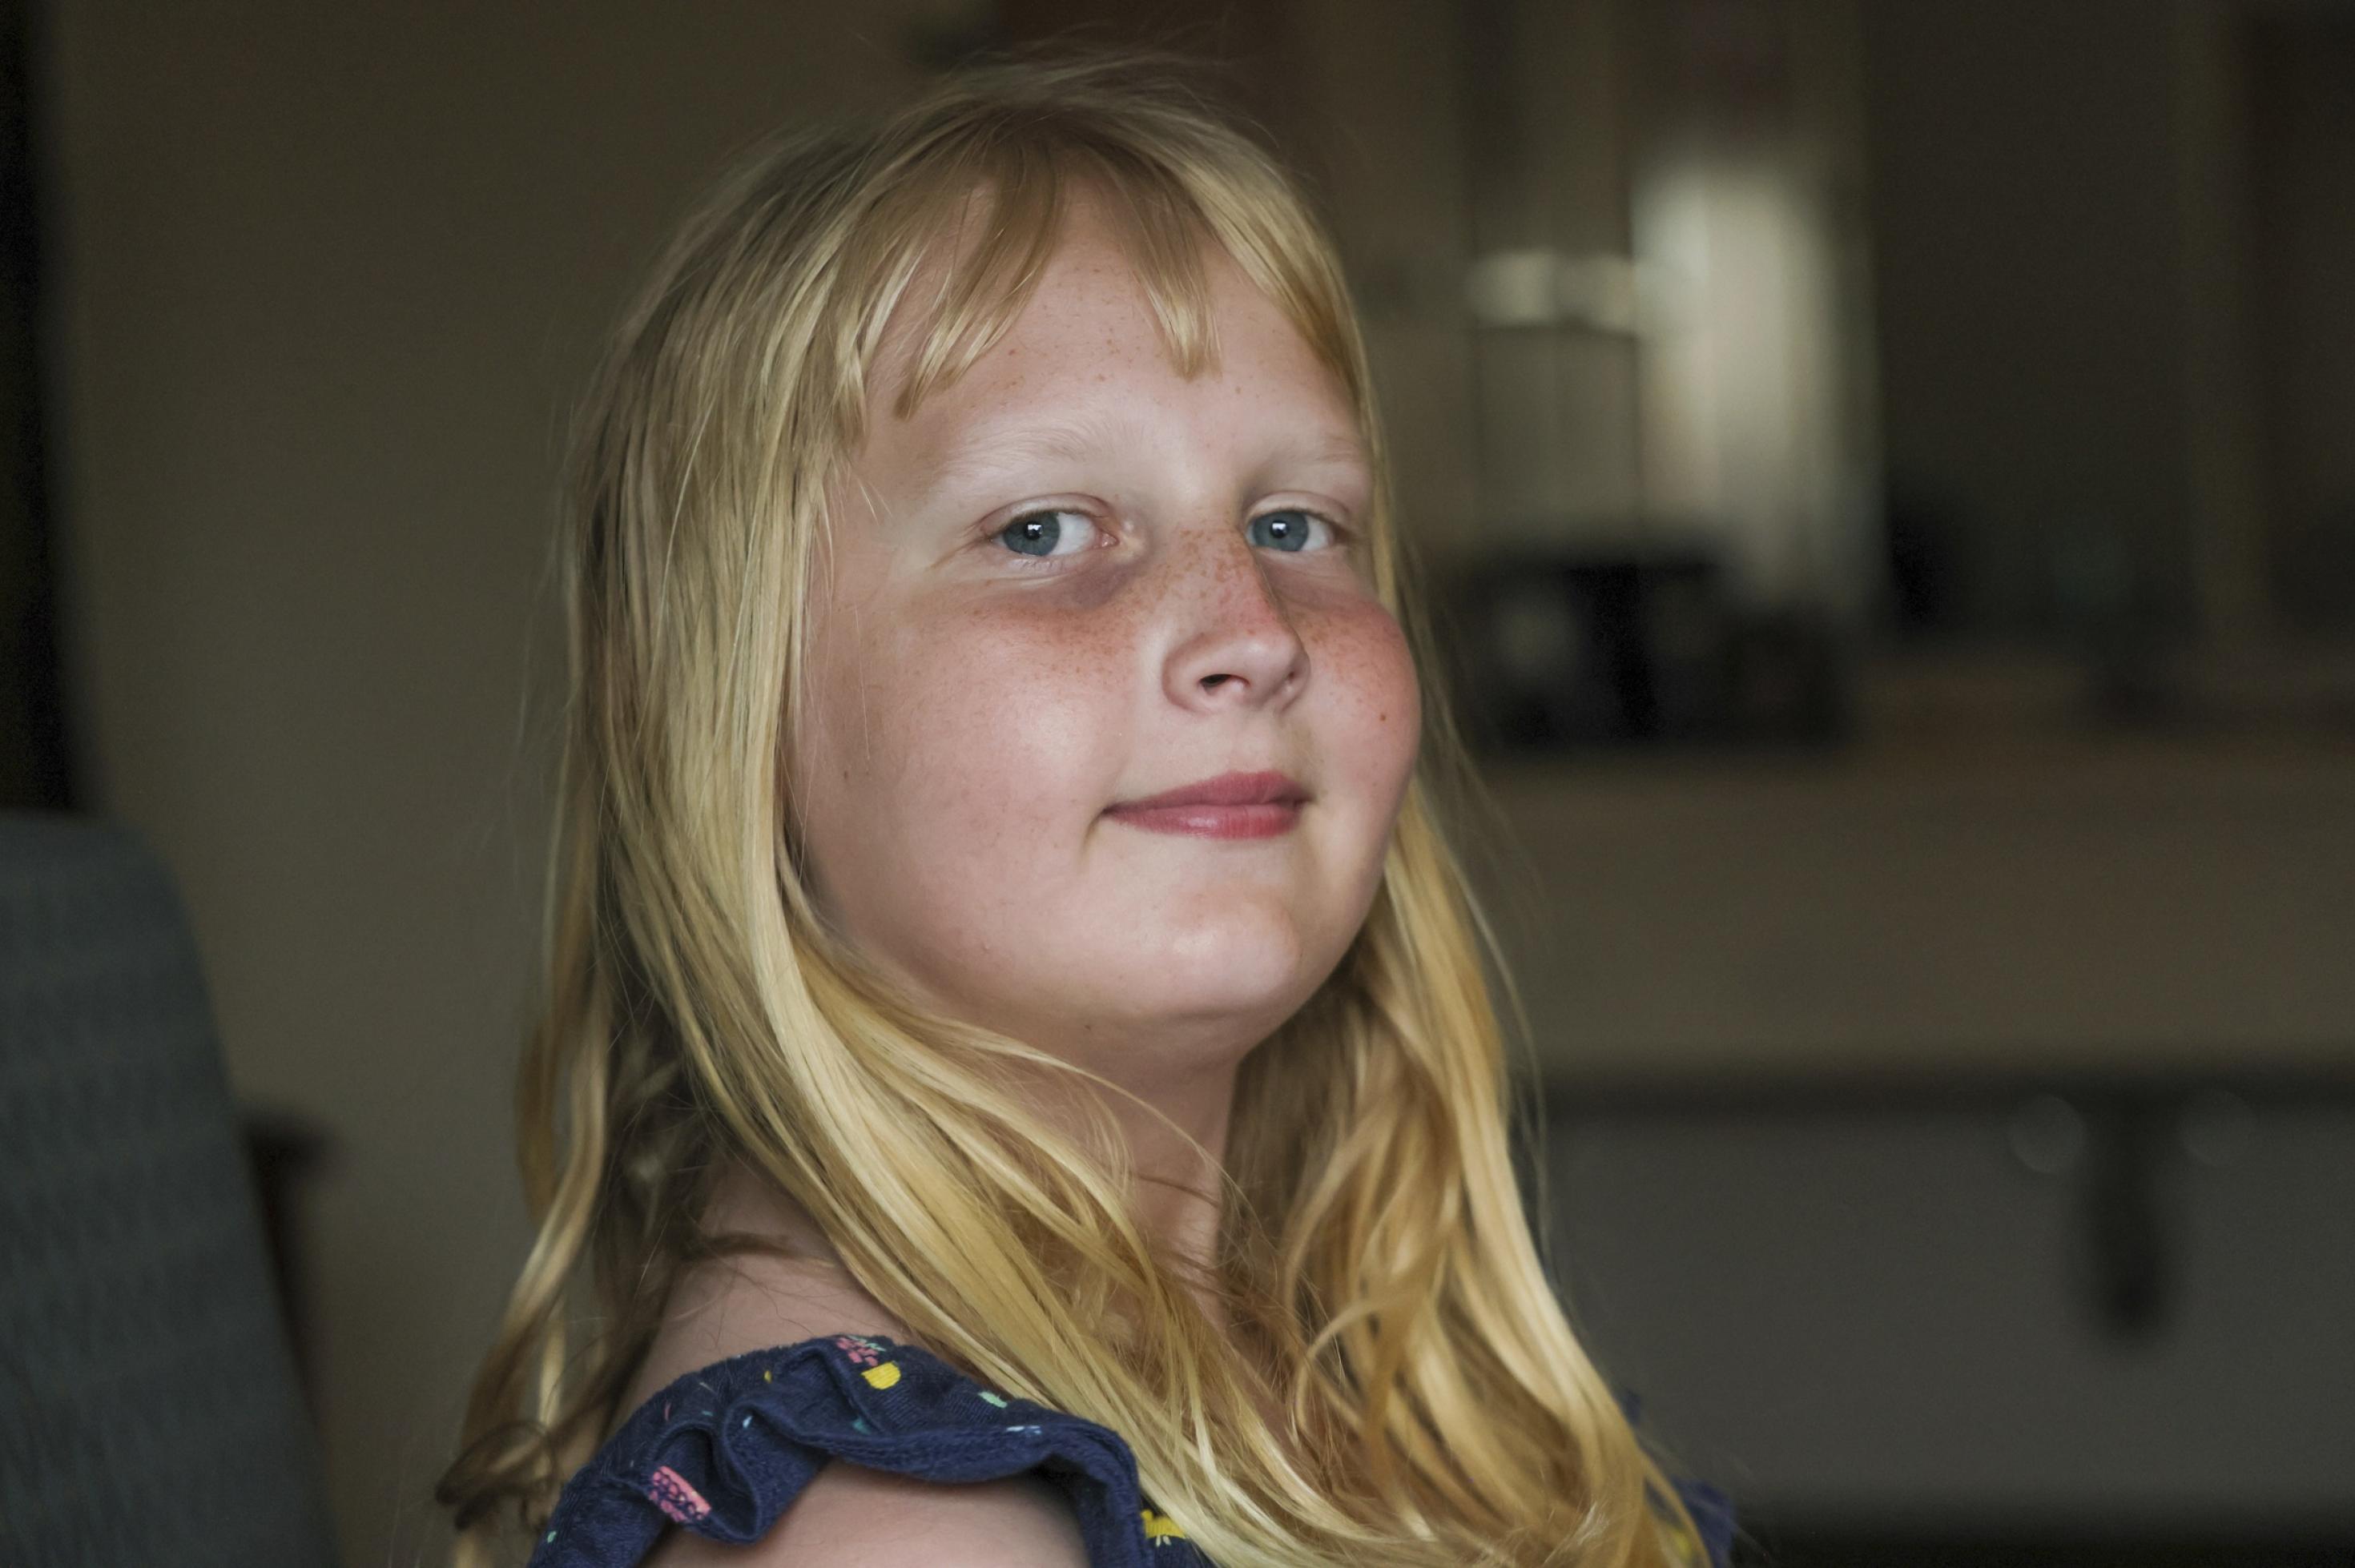 Ein Mädchen mit blauen Augen und langen blonden Haaren blickt selbstbewusst in die Kamera.